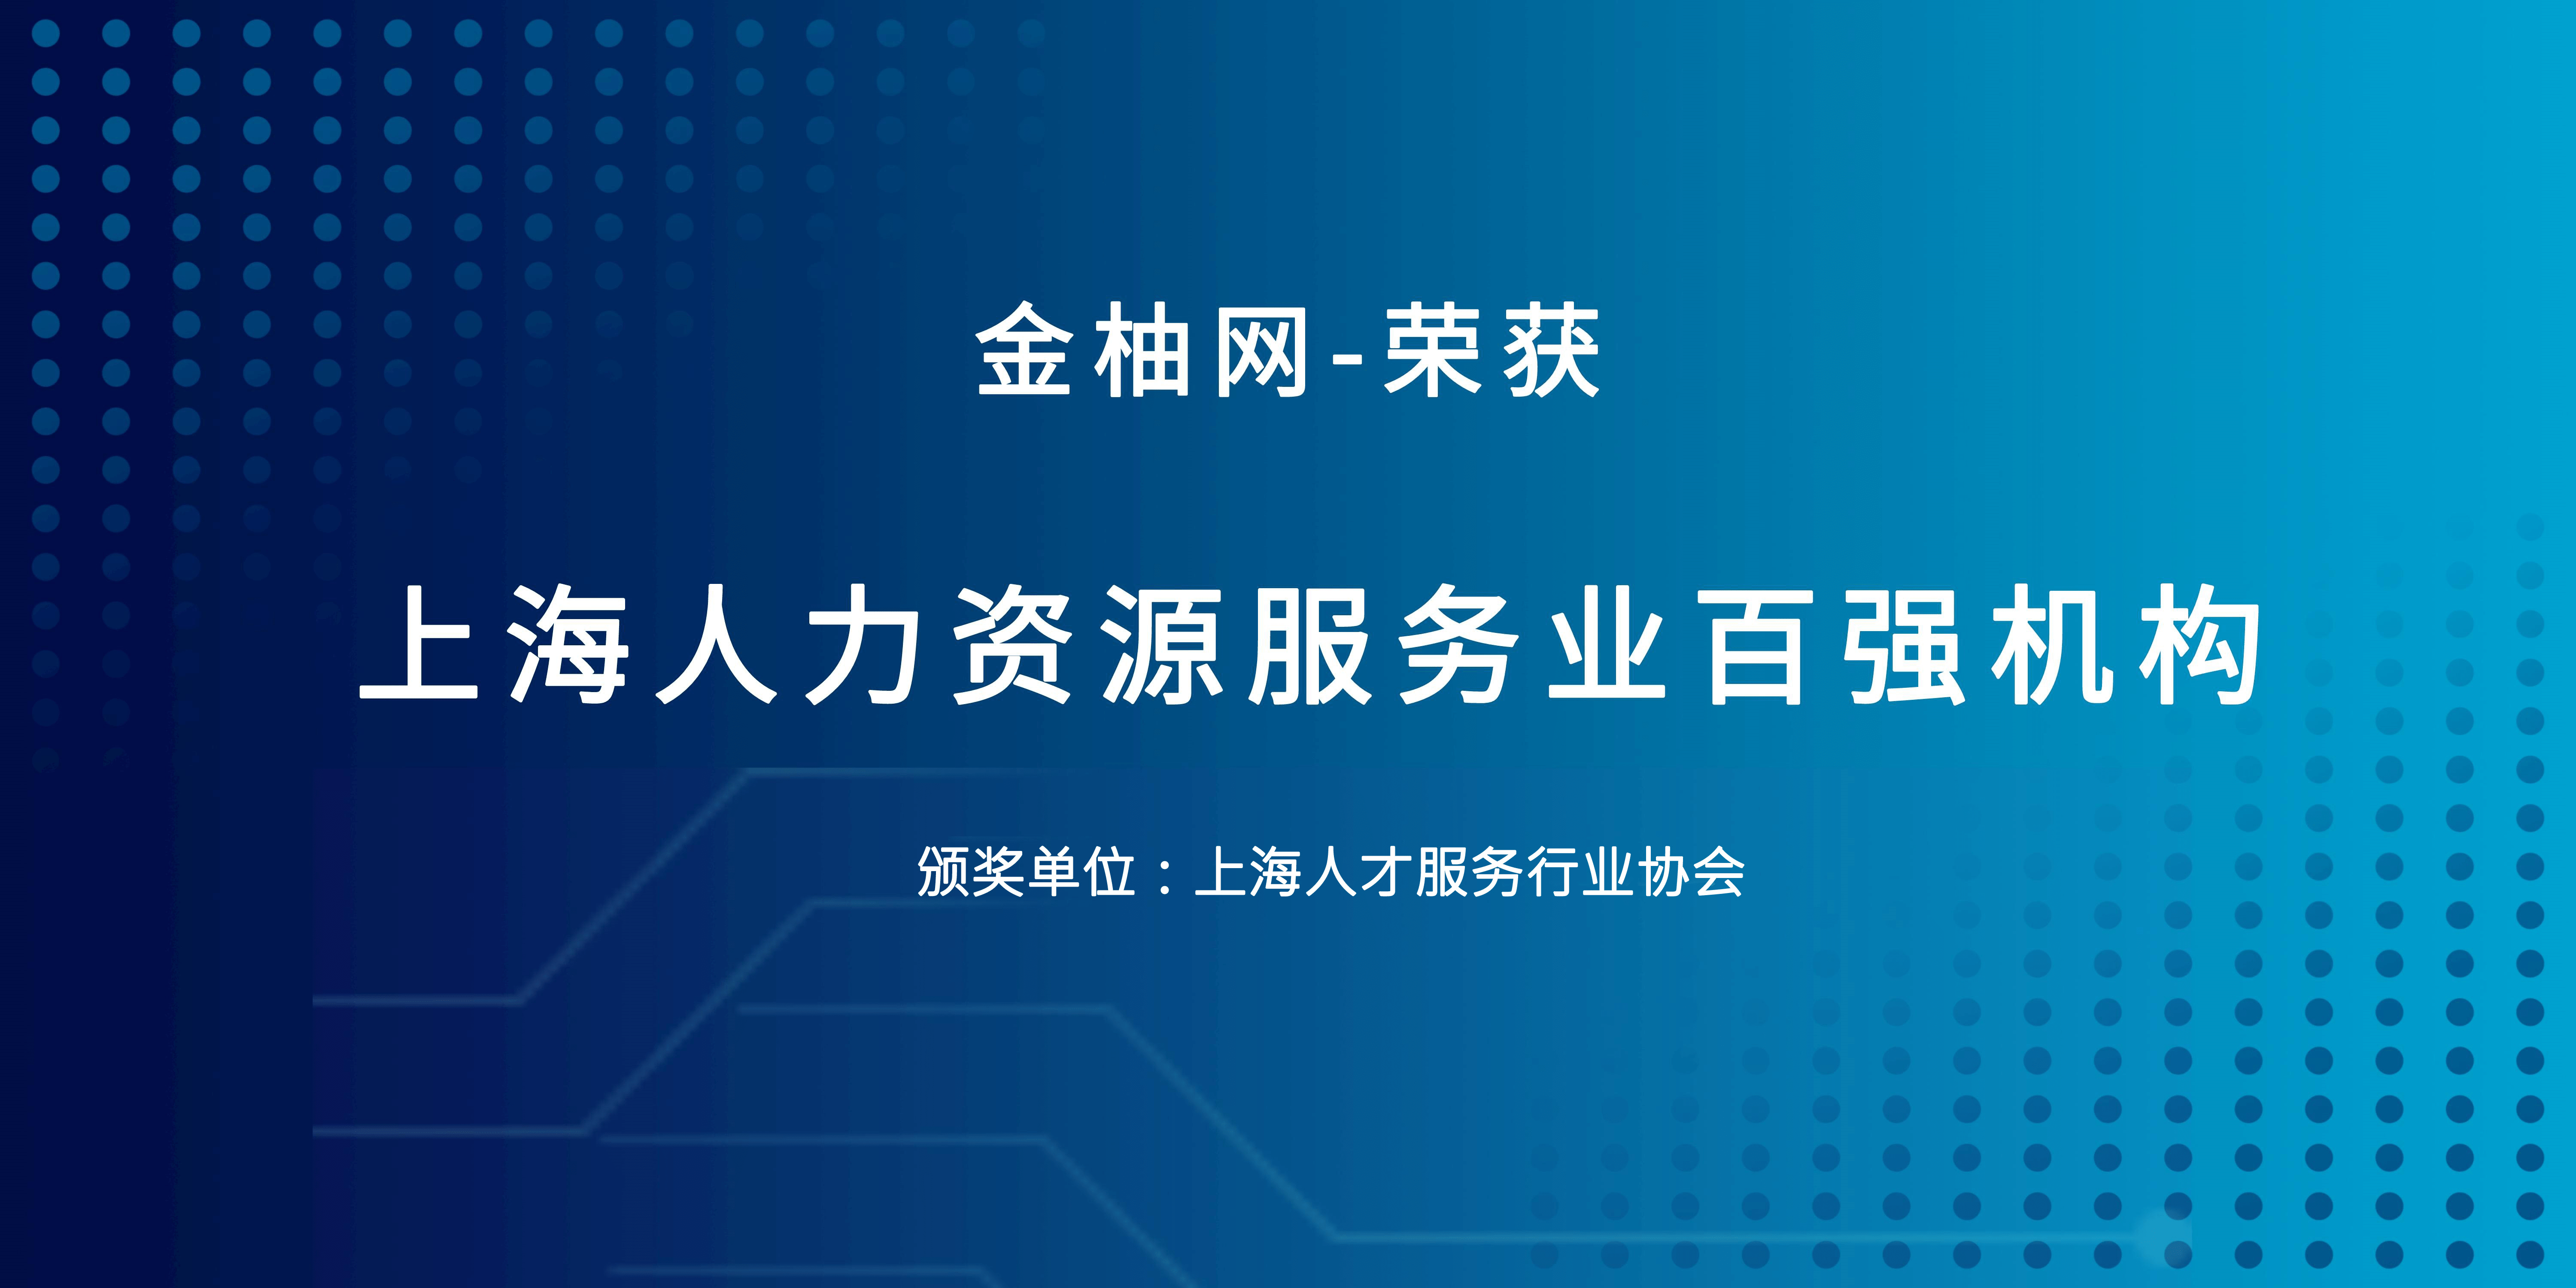 争做行业标杆 金柚网连续两年荣登“上海人力资源服务业百强机构”